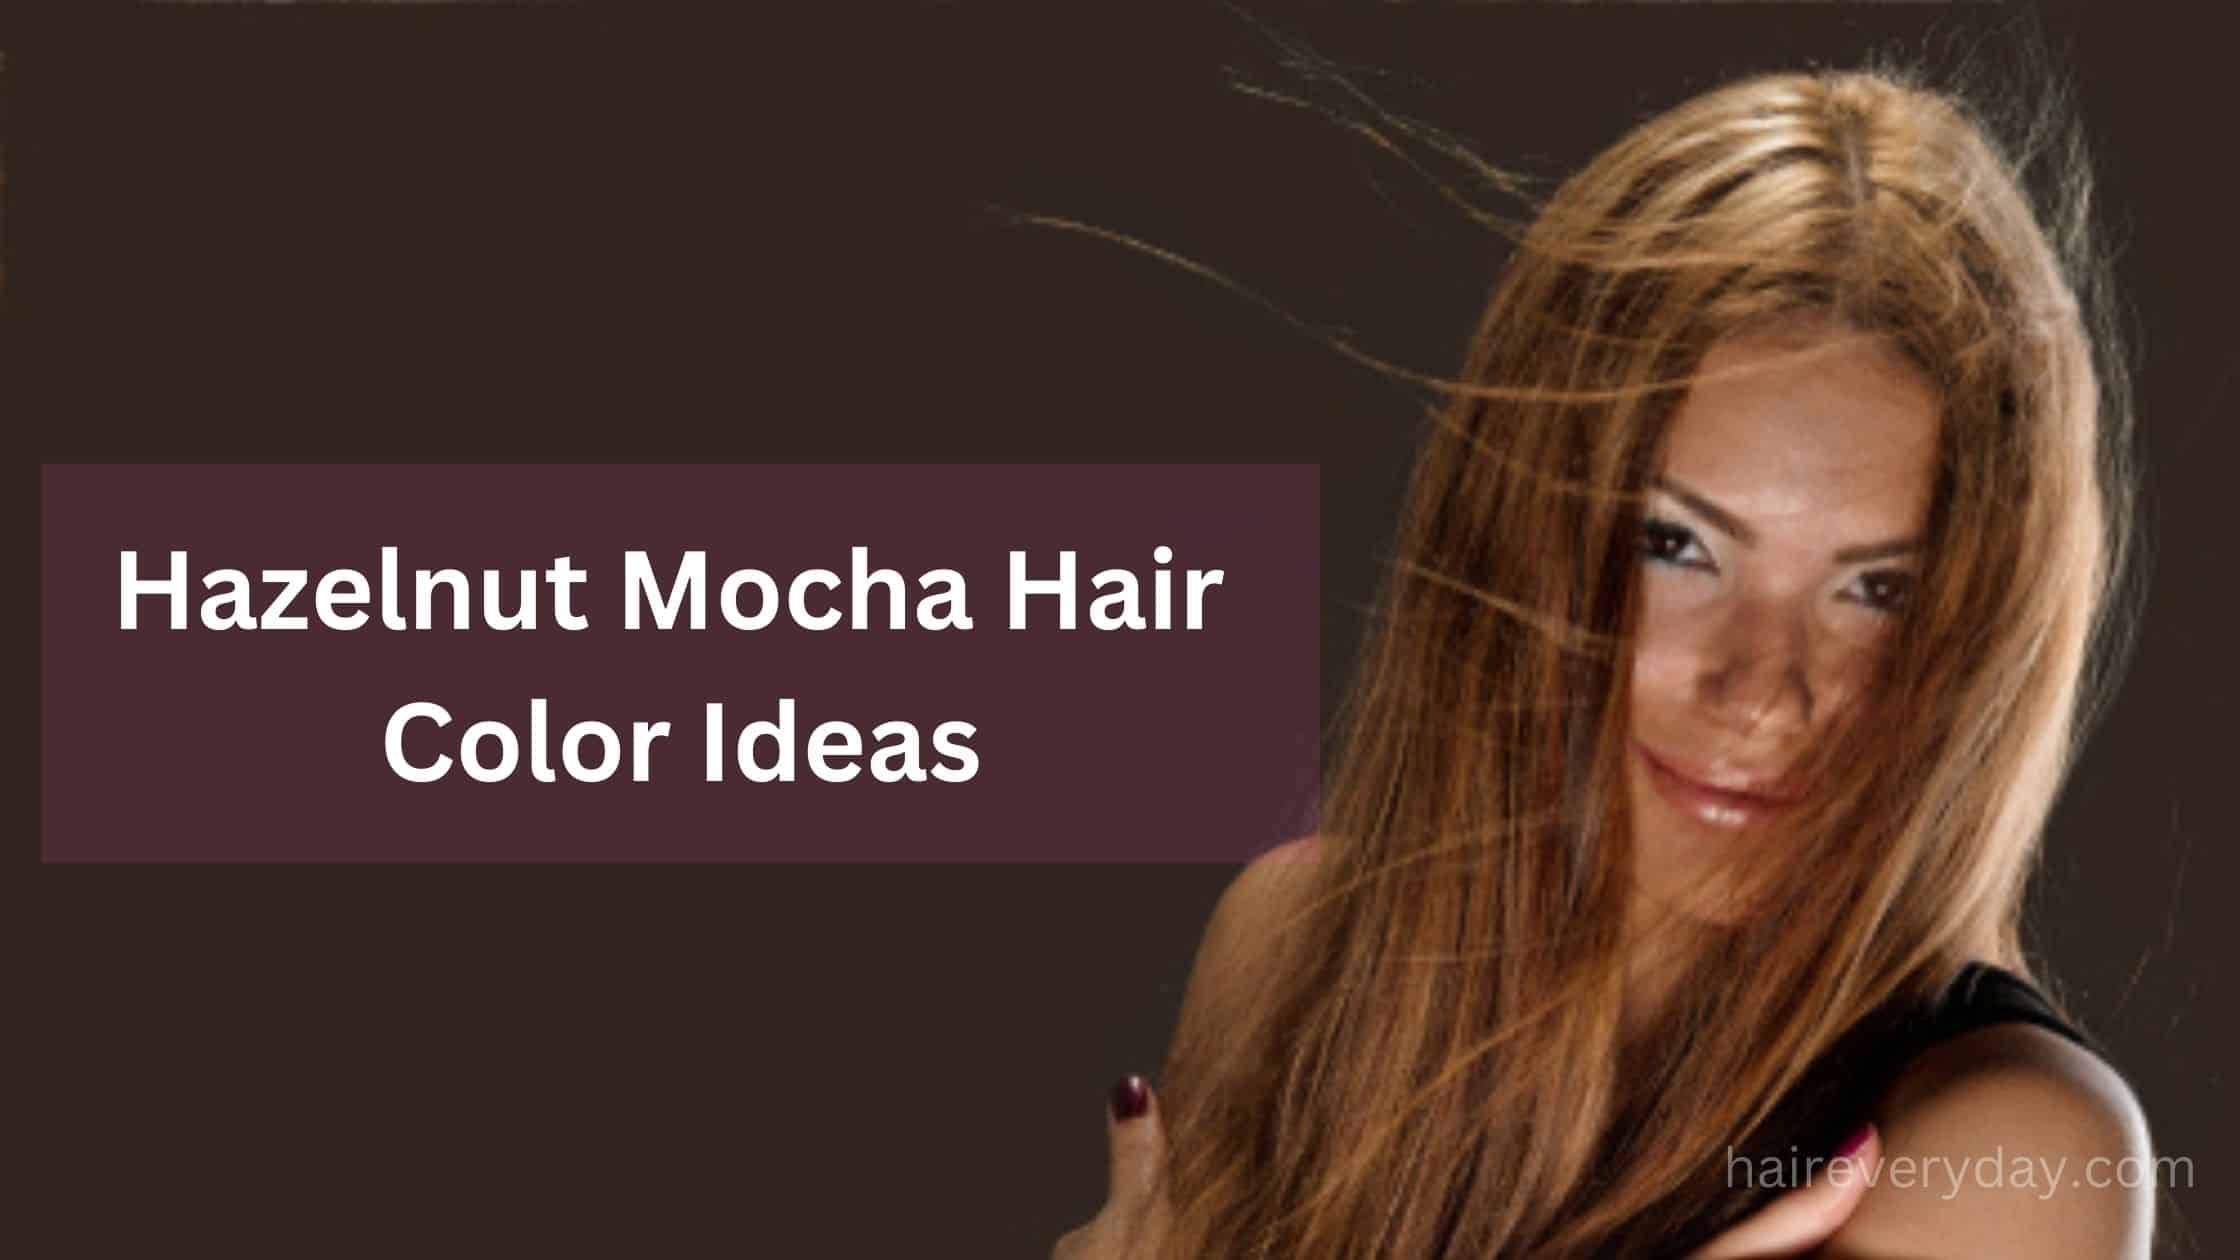 15 Hazelnut Mocha Hair Color Ideas 2023 - Hair Everyday Review